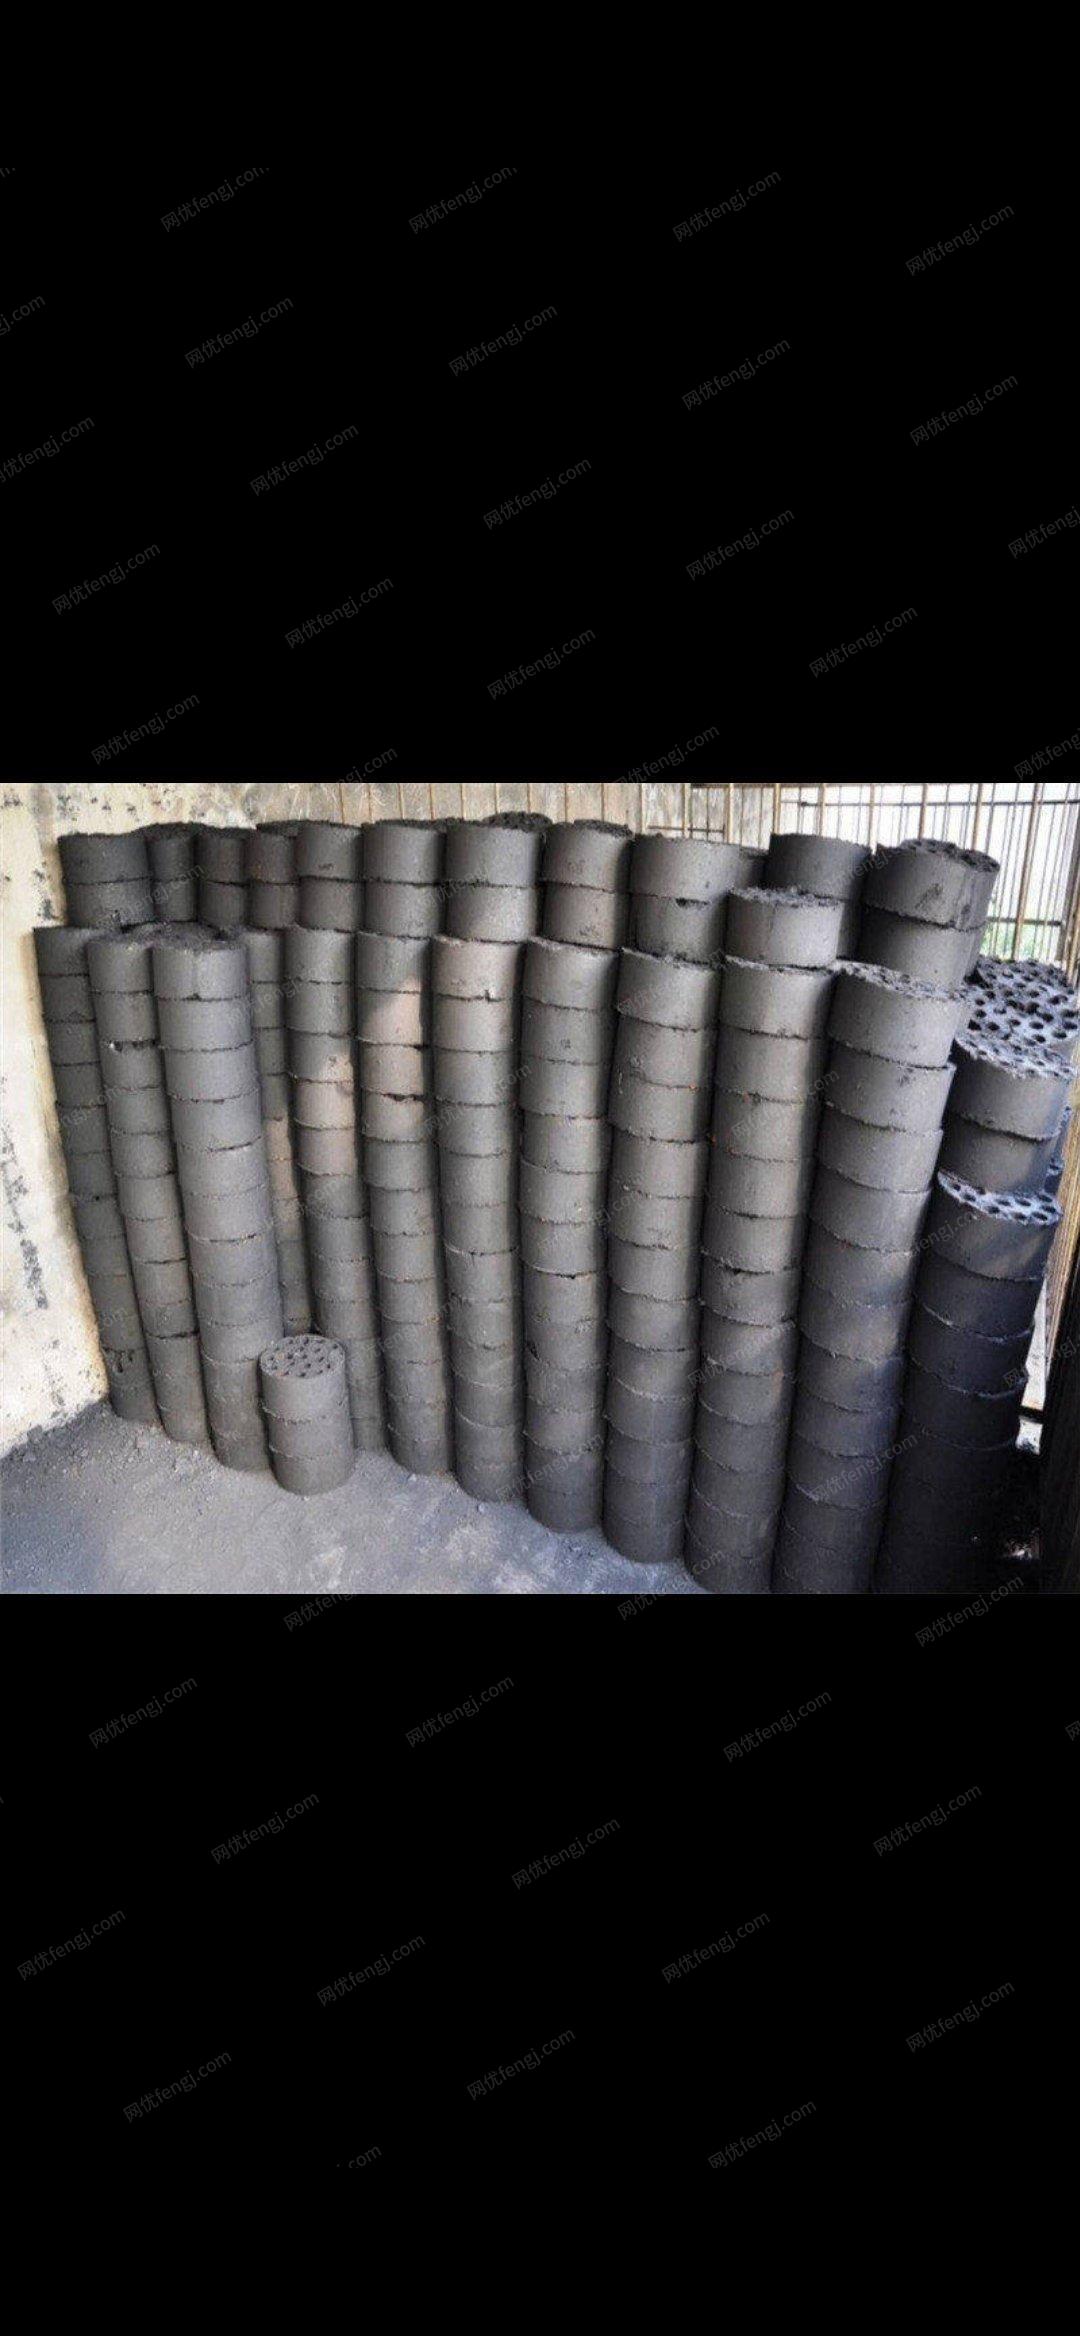 内蒙古乌海蜂窝煤煤块低价出售